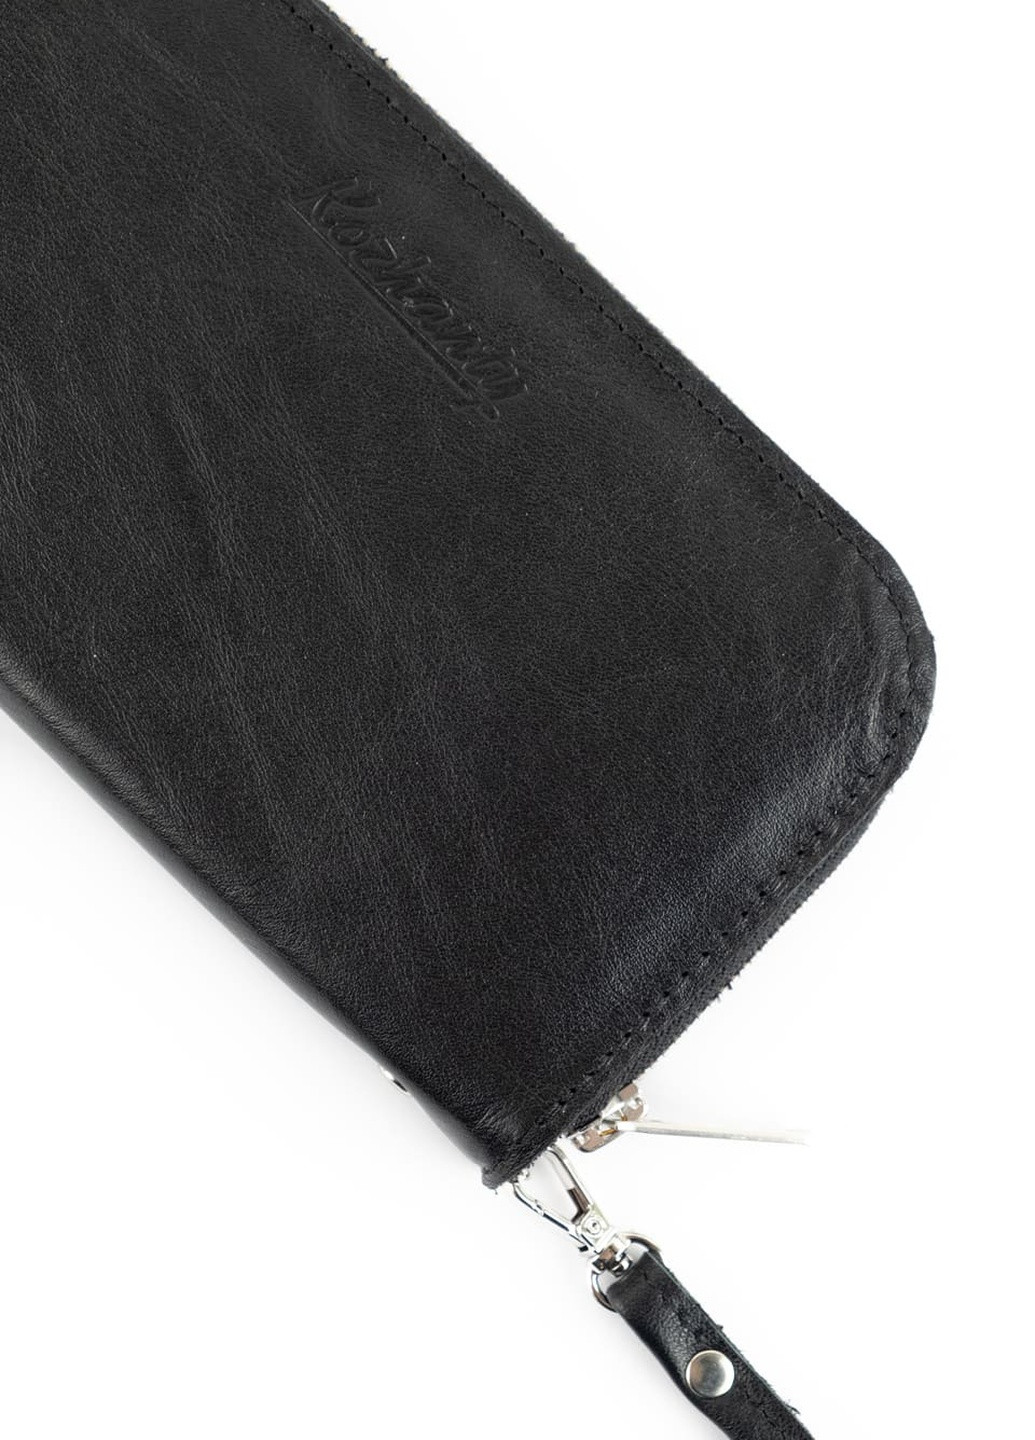 Шкіряний портмоне гаманець зиппер на блискавці Teo чорний Kozhanty (252315370)